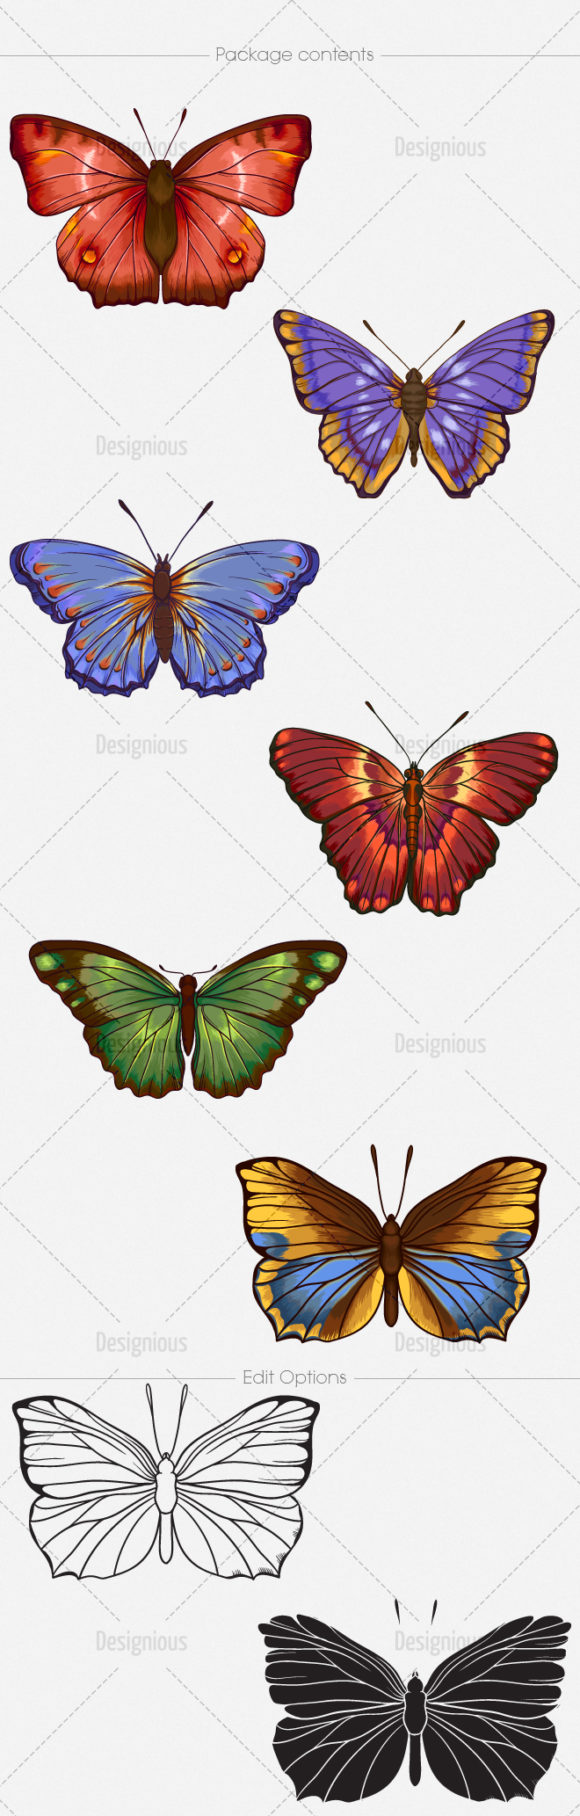 Butterflies Vector Pack 6 2